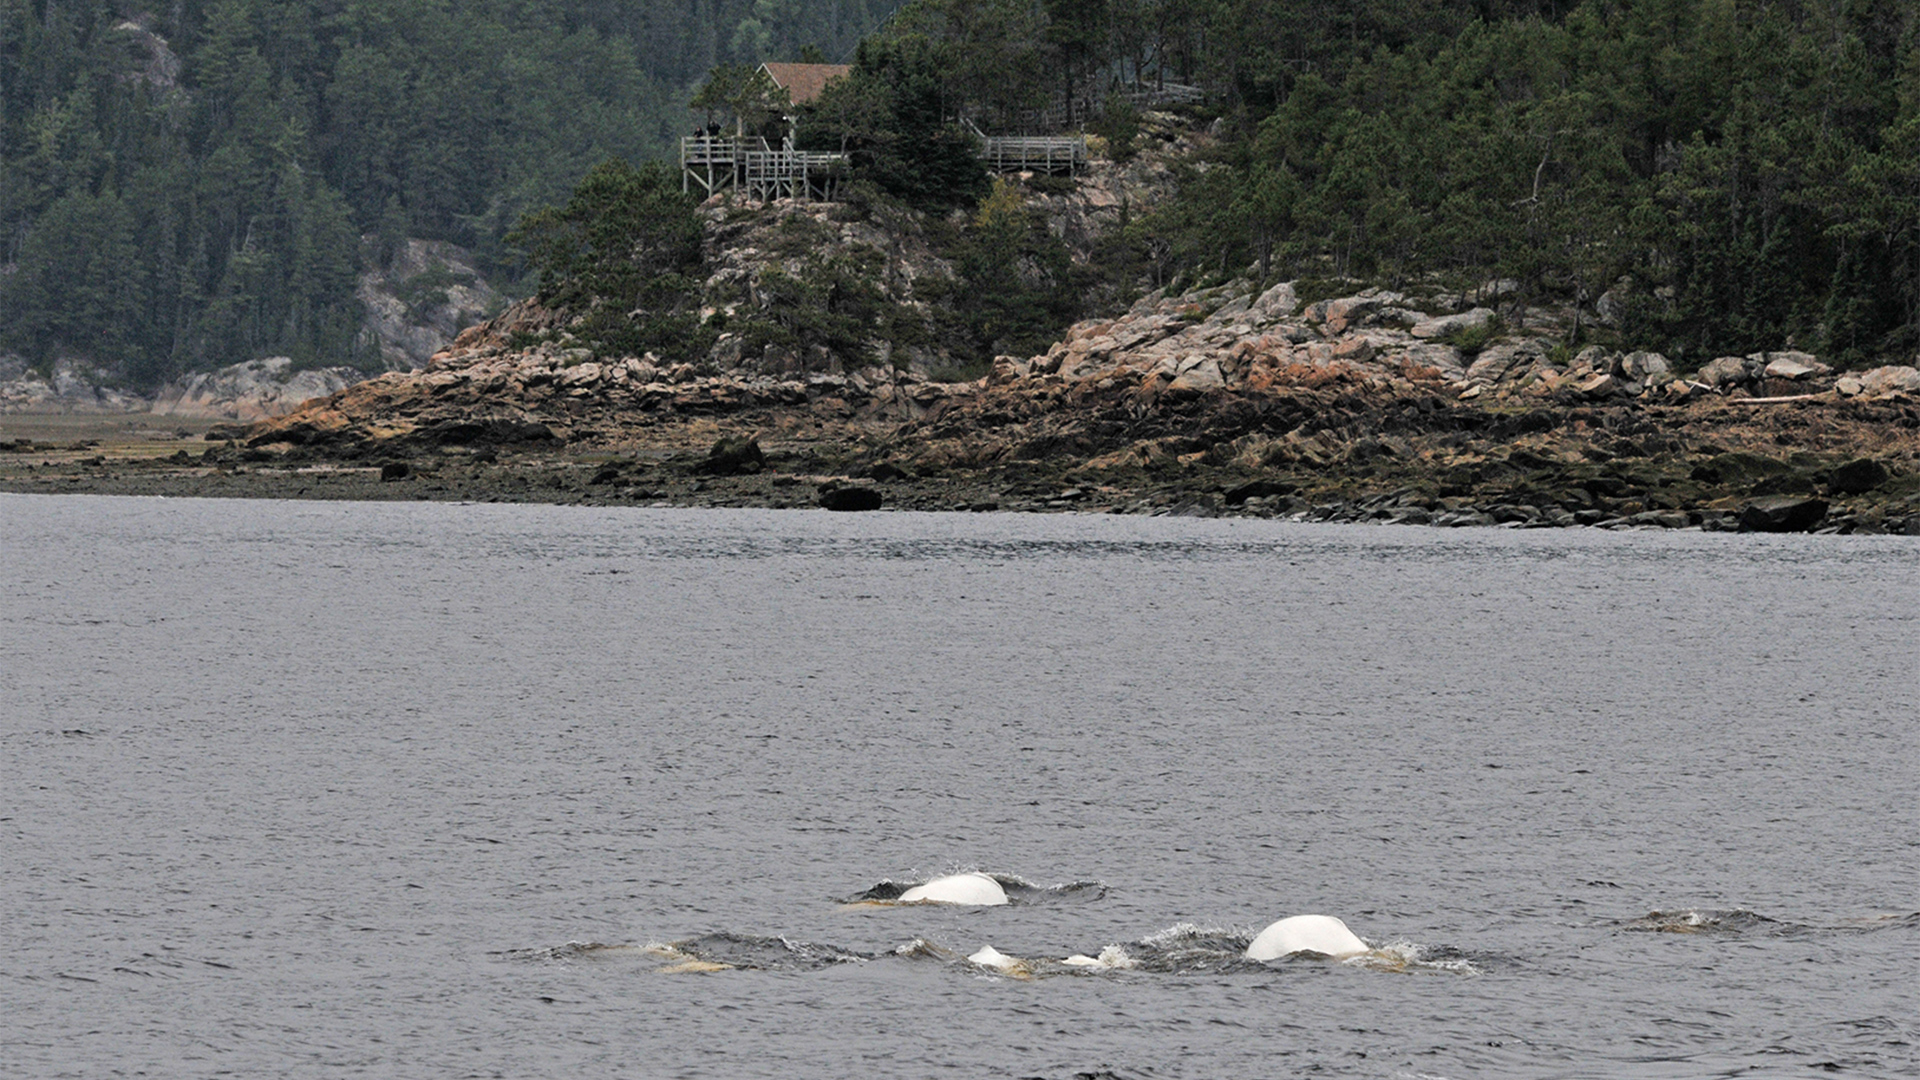 Les dos blancs de deux bélugas font surface, deux autres sont visibles en transparence dans l'eau et deux autres percent à peine la surface. Ils sont près d'une rive rocheuse.